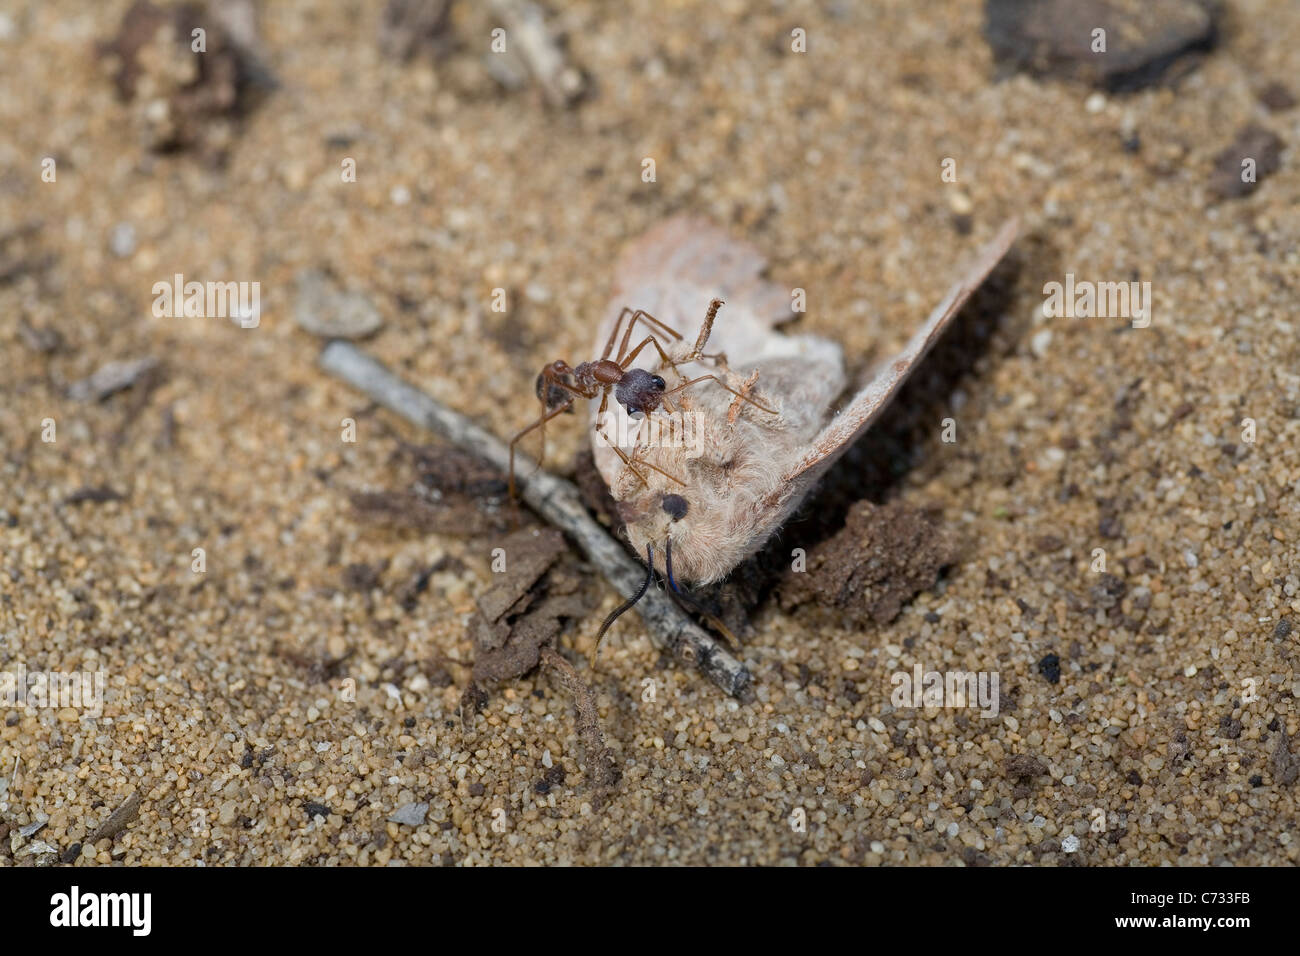 Bull australiano Ant intenta arrastrar una polilla que ha matado volver al nido. Foto de stock